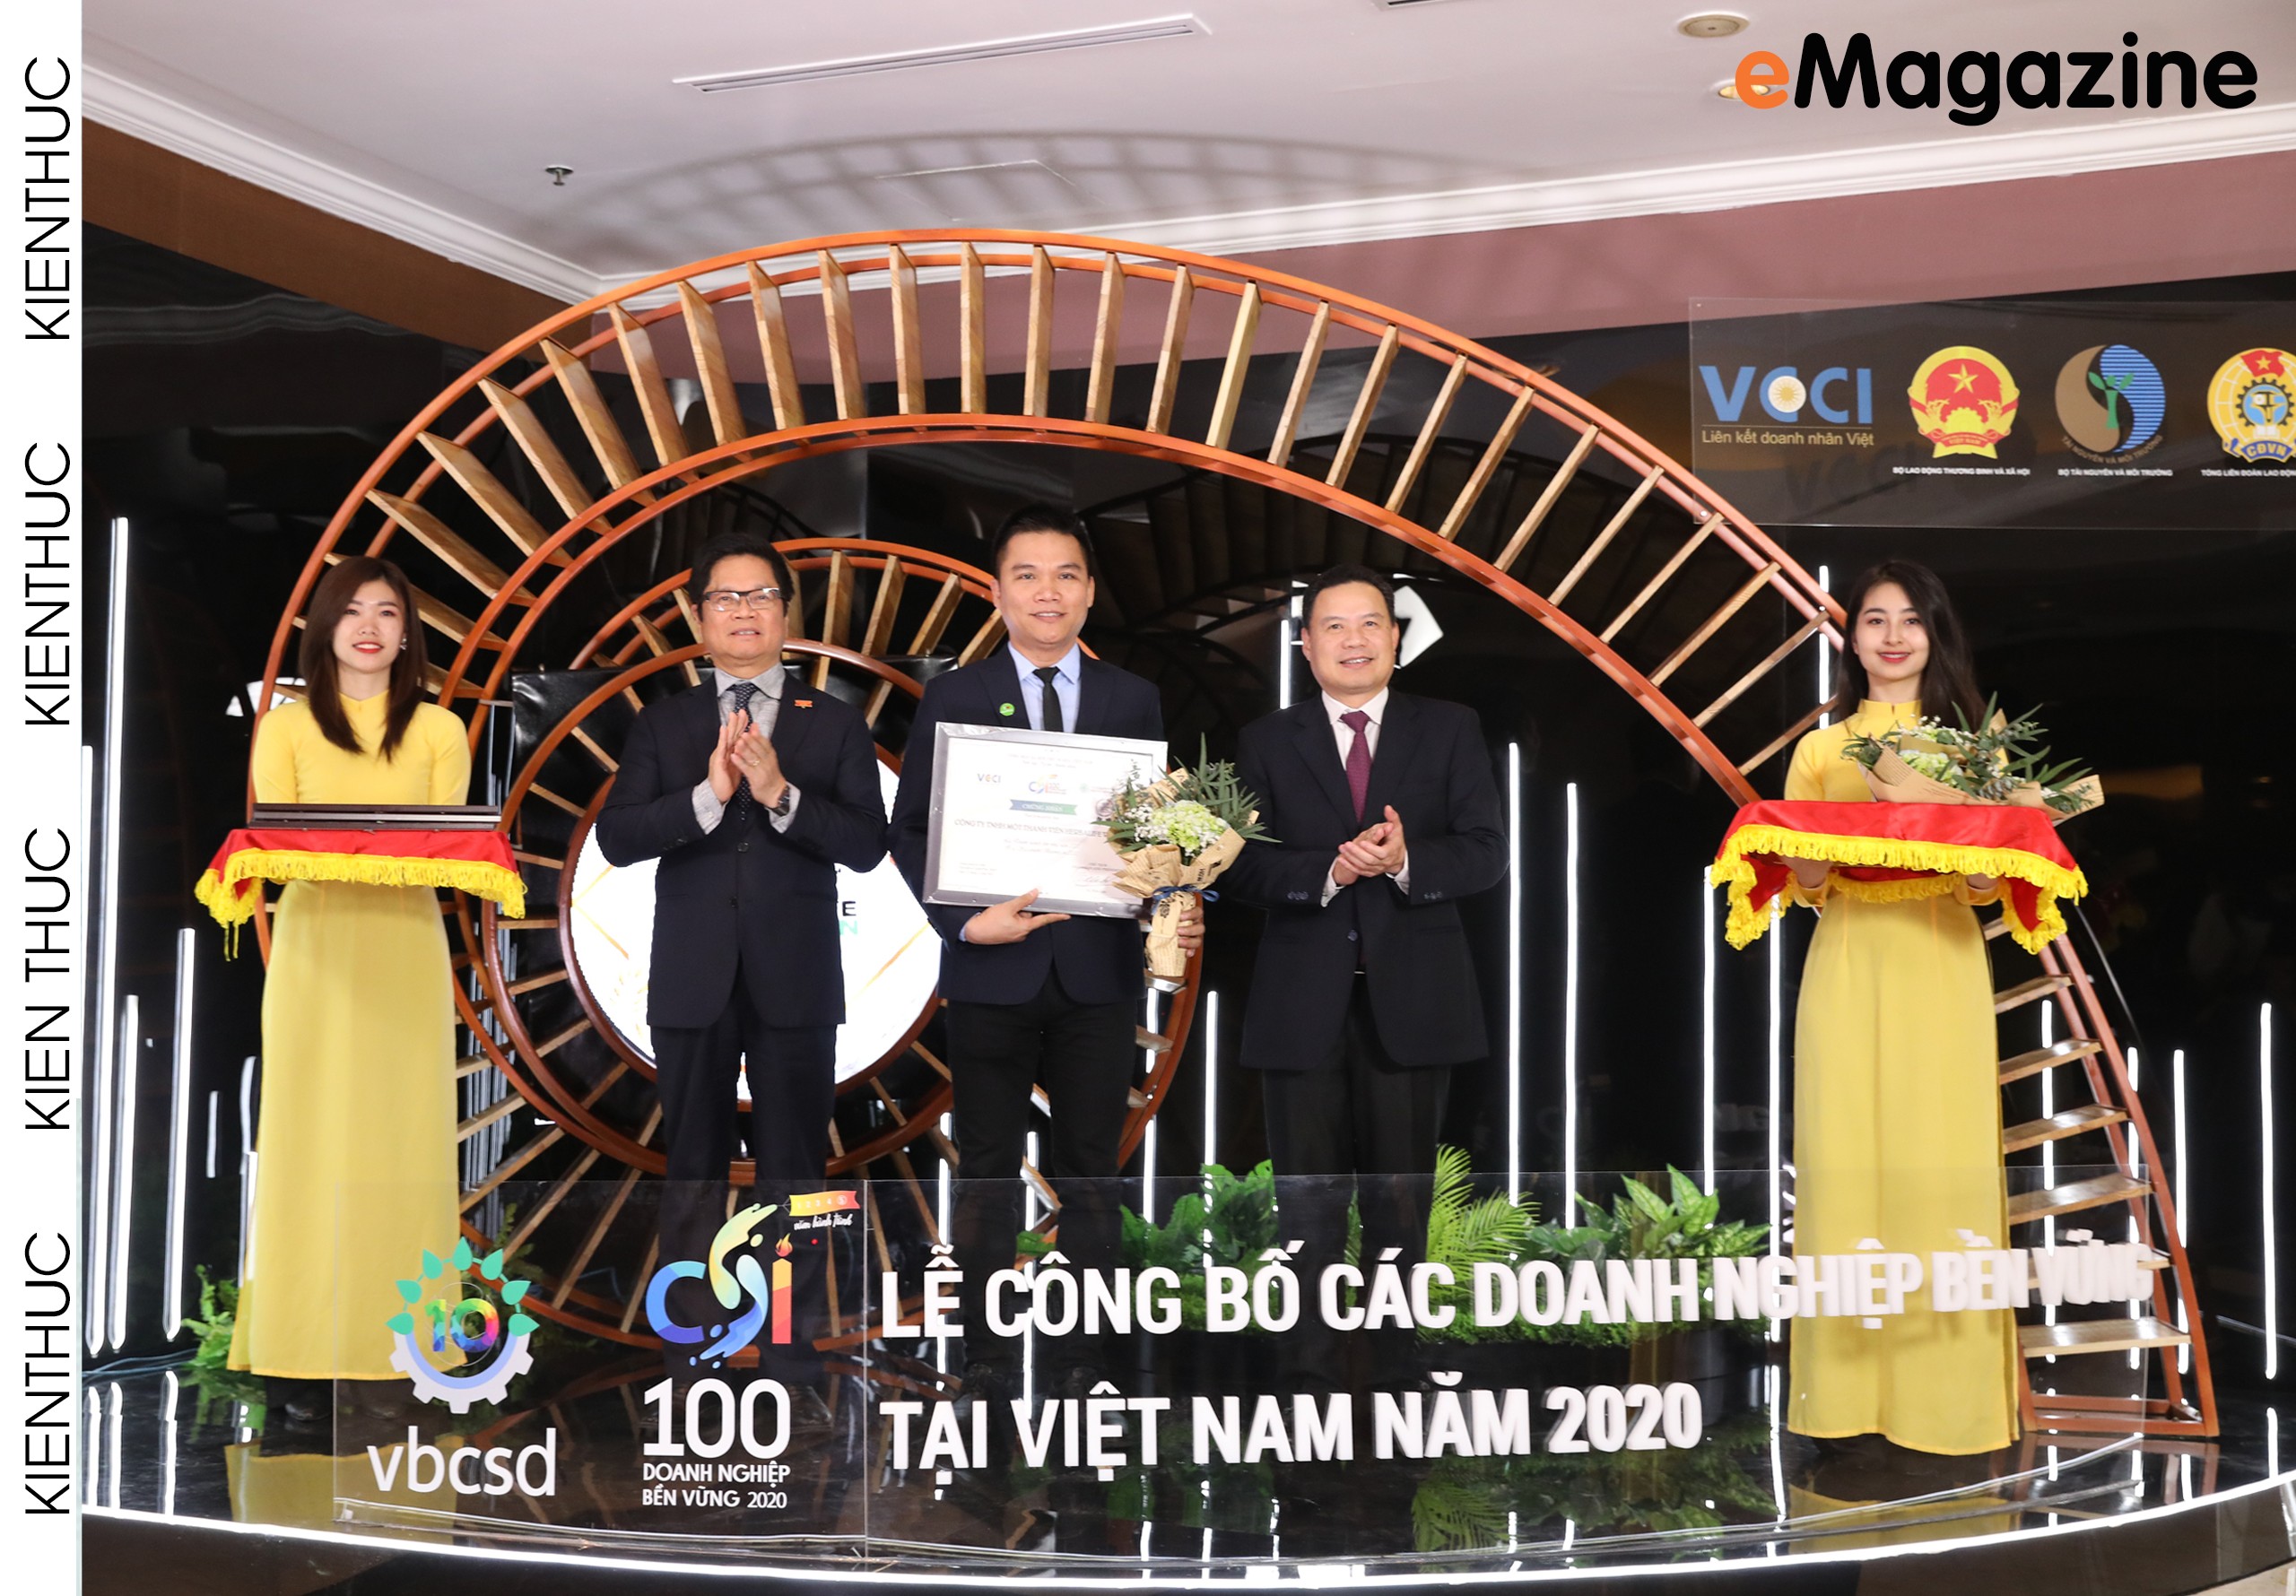 Herbalife Việt Nam - Phát triển bền vững và gắn bó với cộng đồng